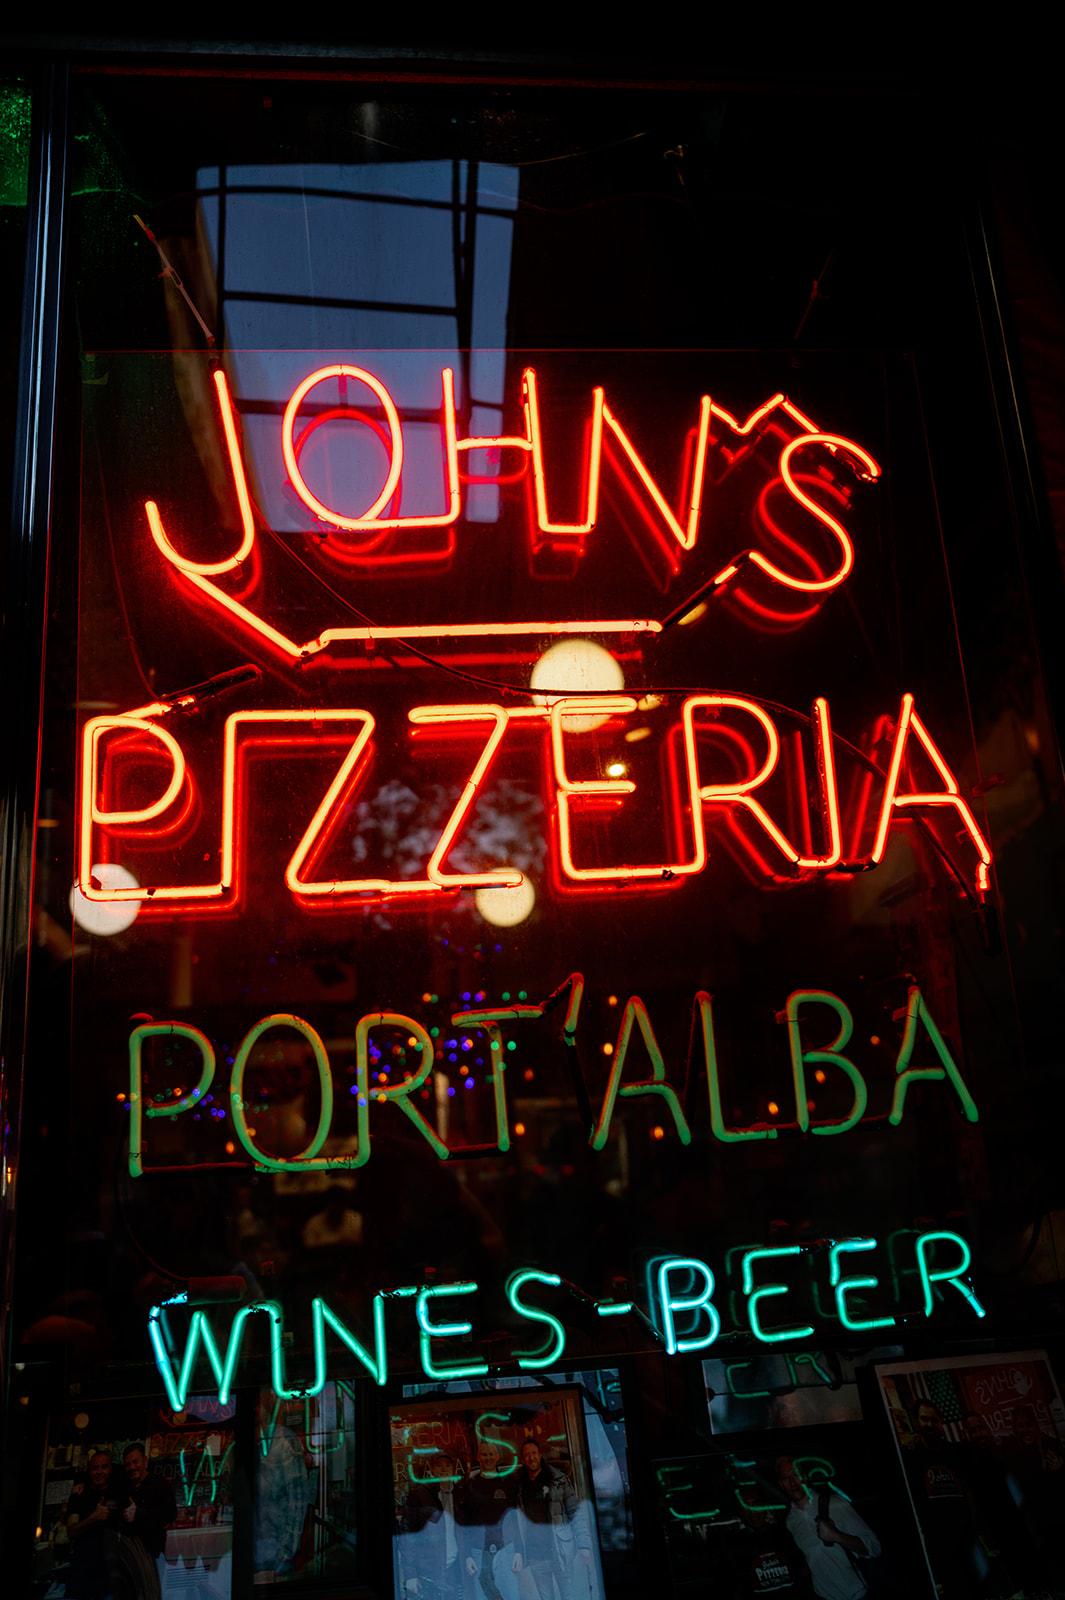 John's Pizzeria on Bleecker Street in New York City.